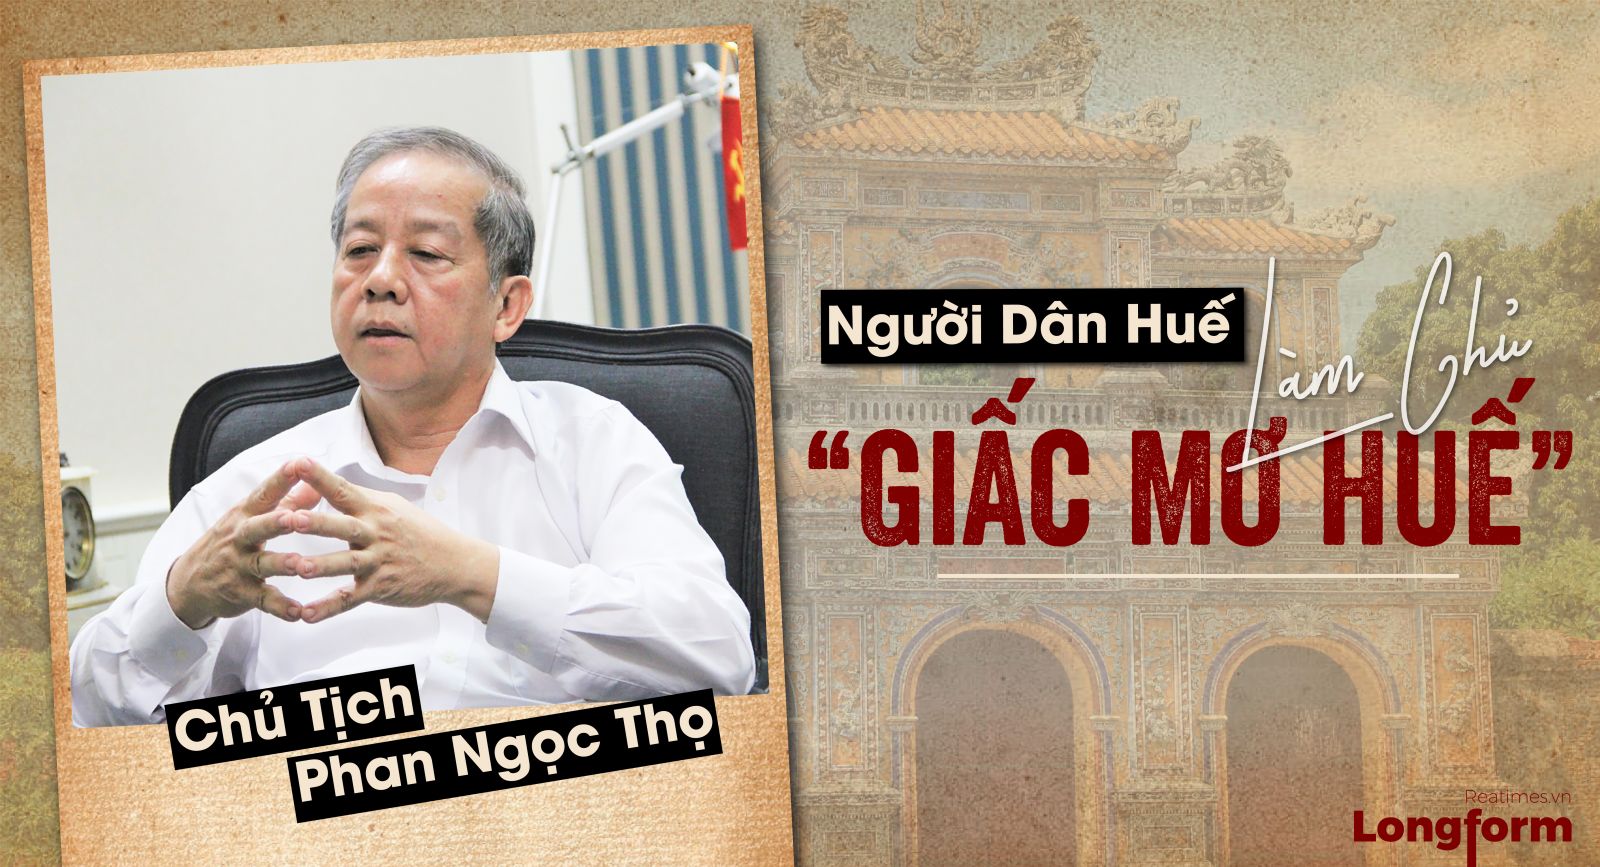 Chủ tịch Phan Ngọc Thọ: Người dân Huế làm chủ “Giấc mơ Huế”